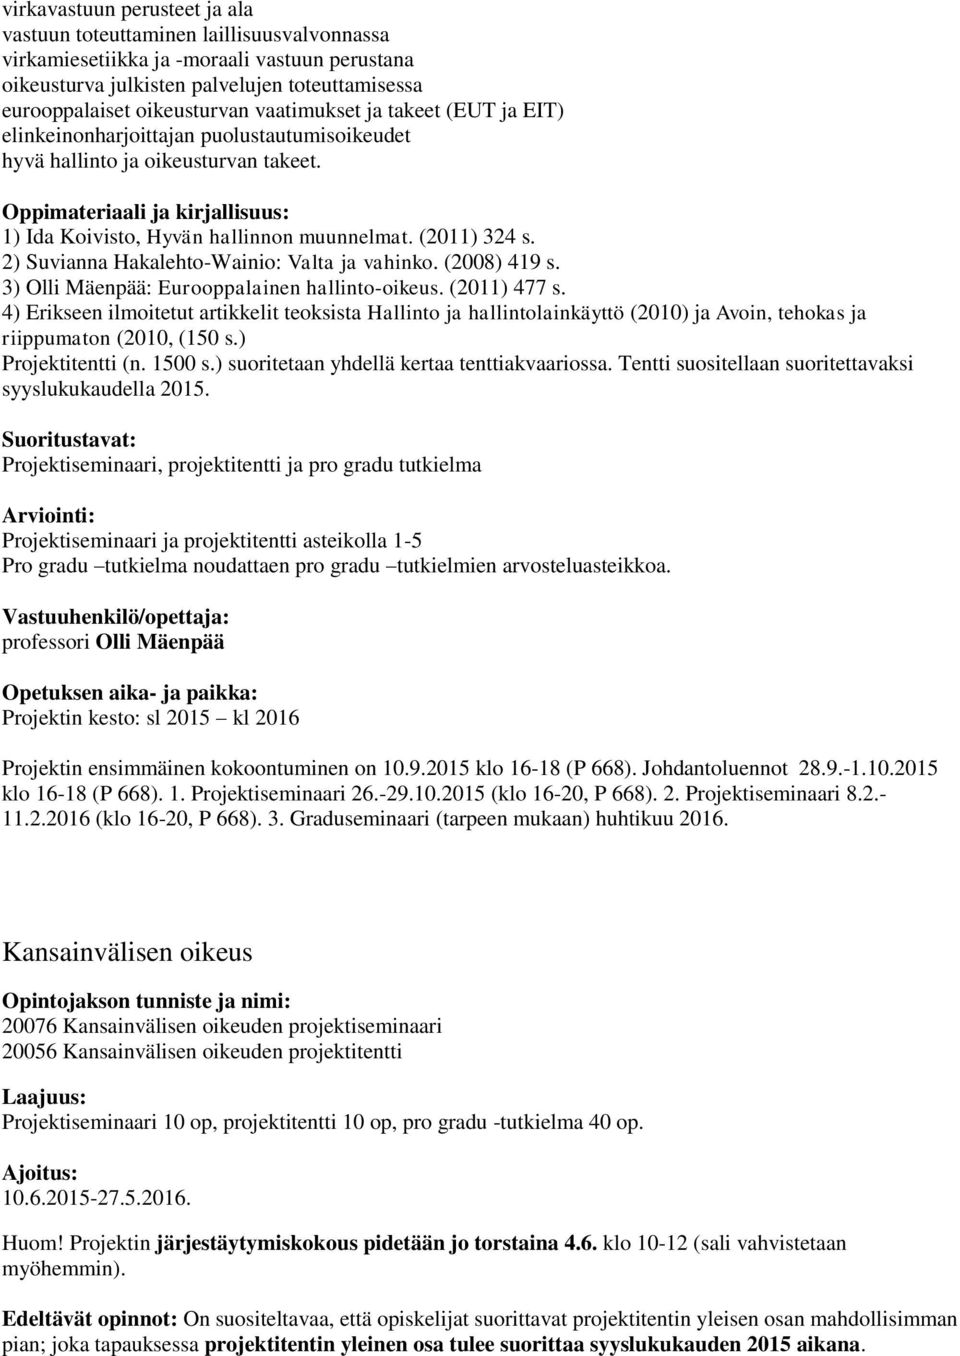 (2011) 324 s. 2) Suvianna Hakalehto-Wainio: Valta ja vahinko. (2008) 419 s. 3) Olli Mäenpää: Eurooppalainen hallinto-oikeus. (2011) 477 s.